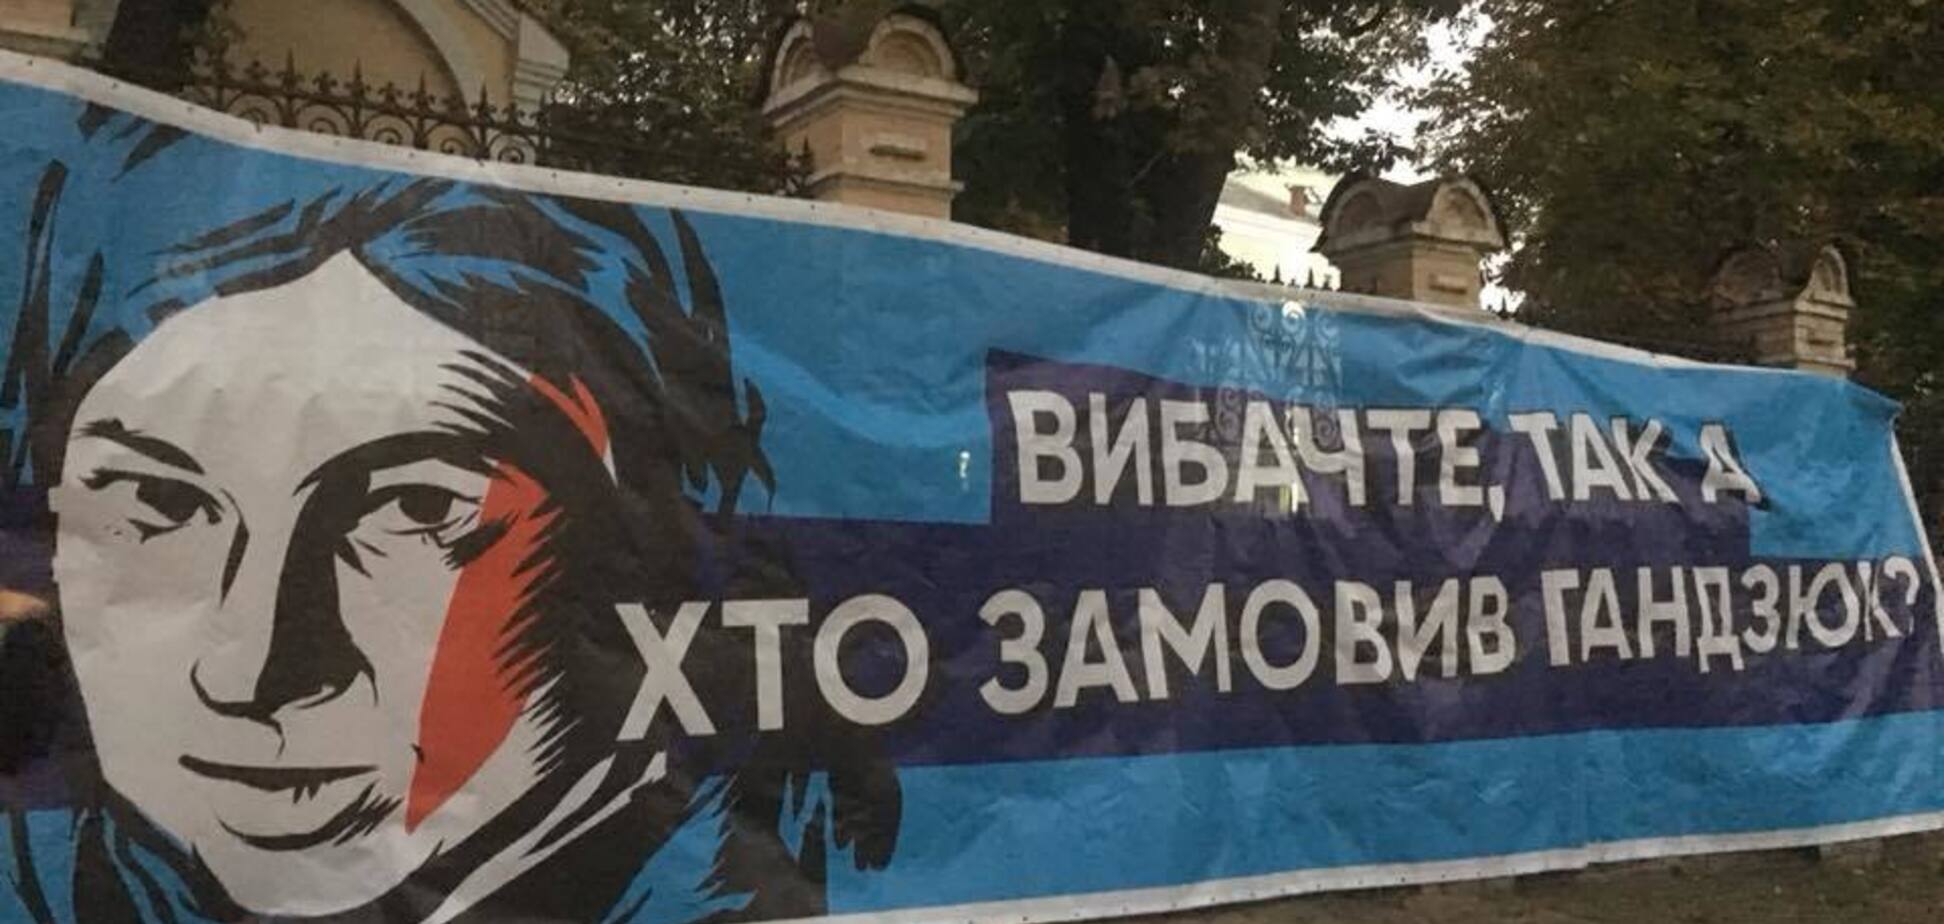 ''Молчание убивает'': киевляне вышли на протест под администрацию президента